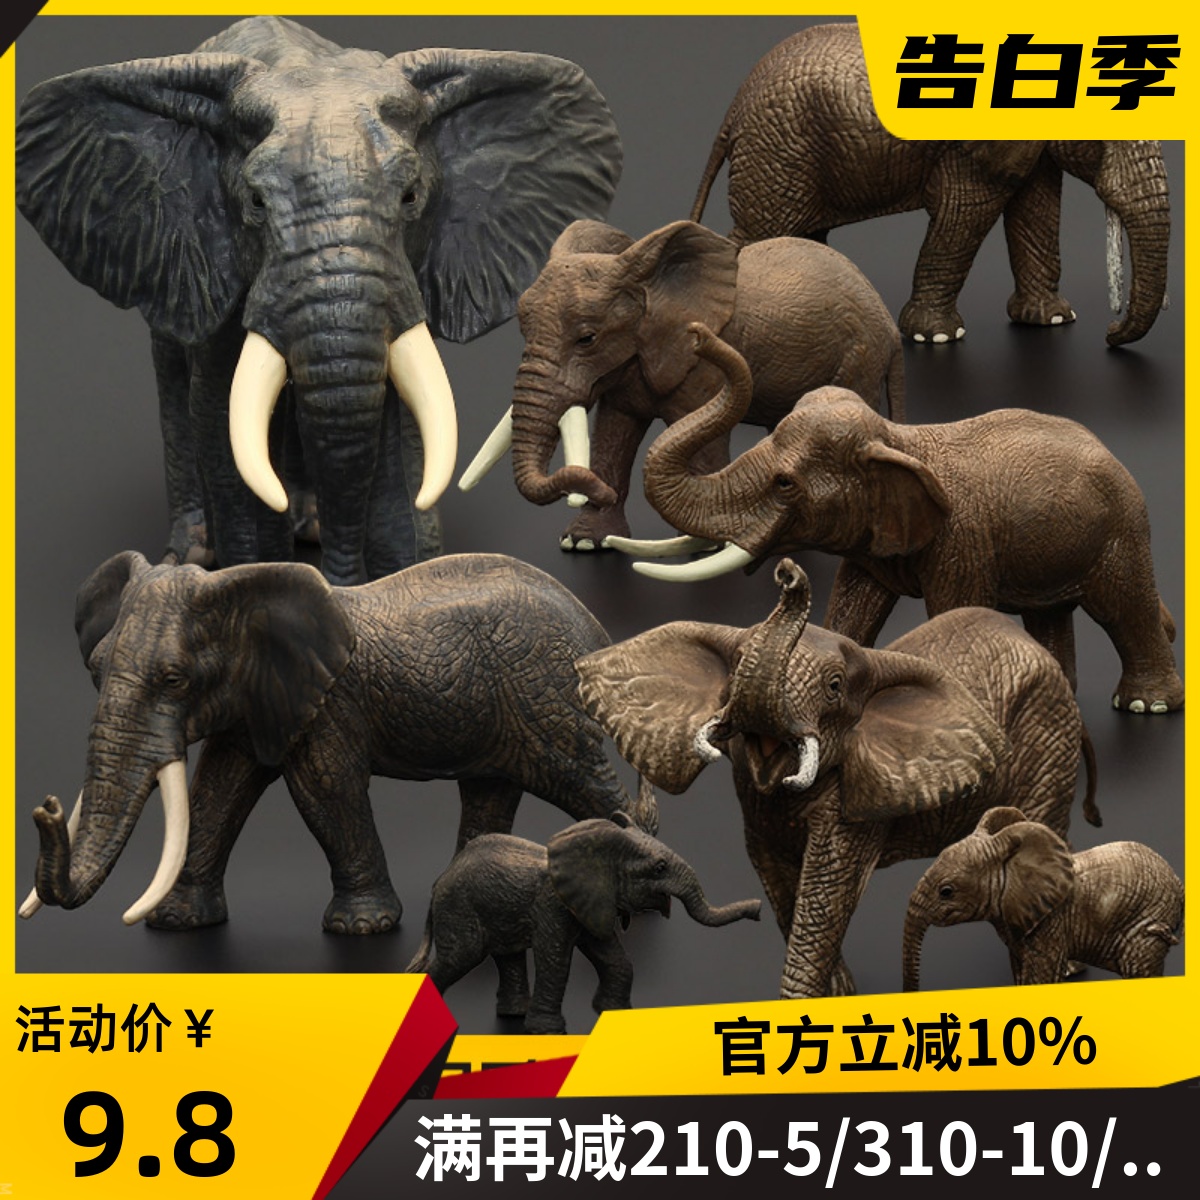 儿童仿真动物玩具野生动物模型套装 大号实心大象非洲象亚洲象 园